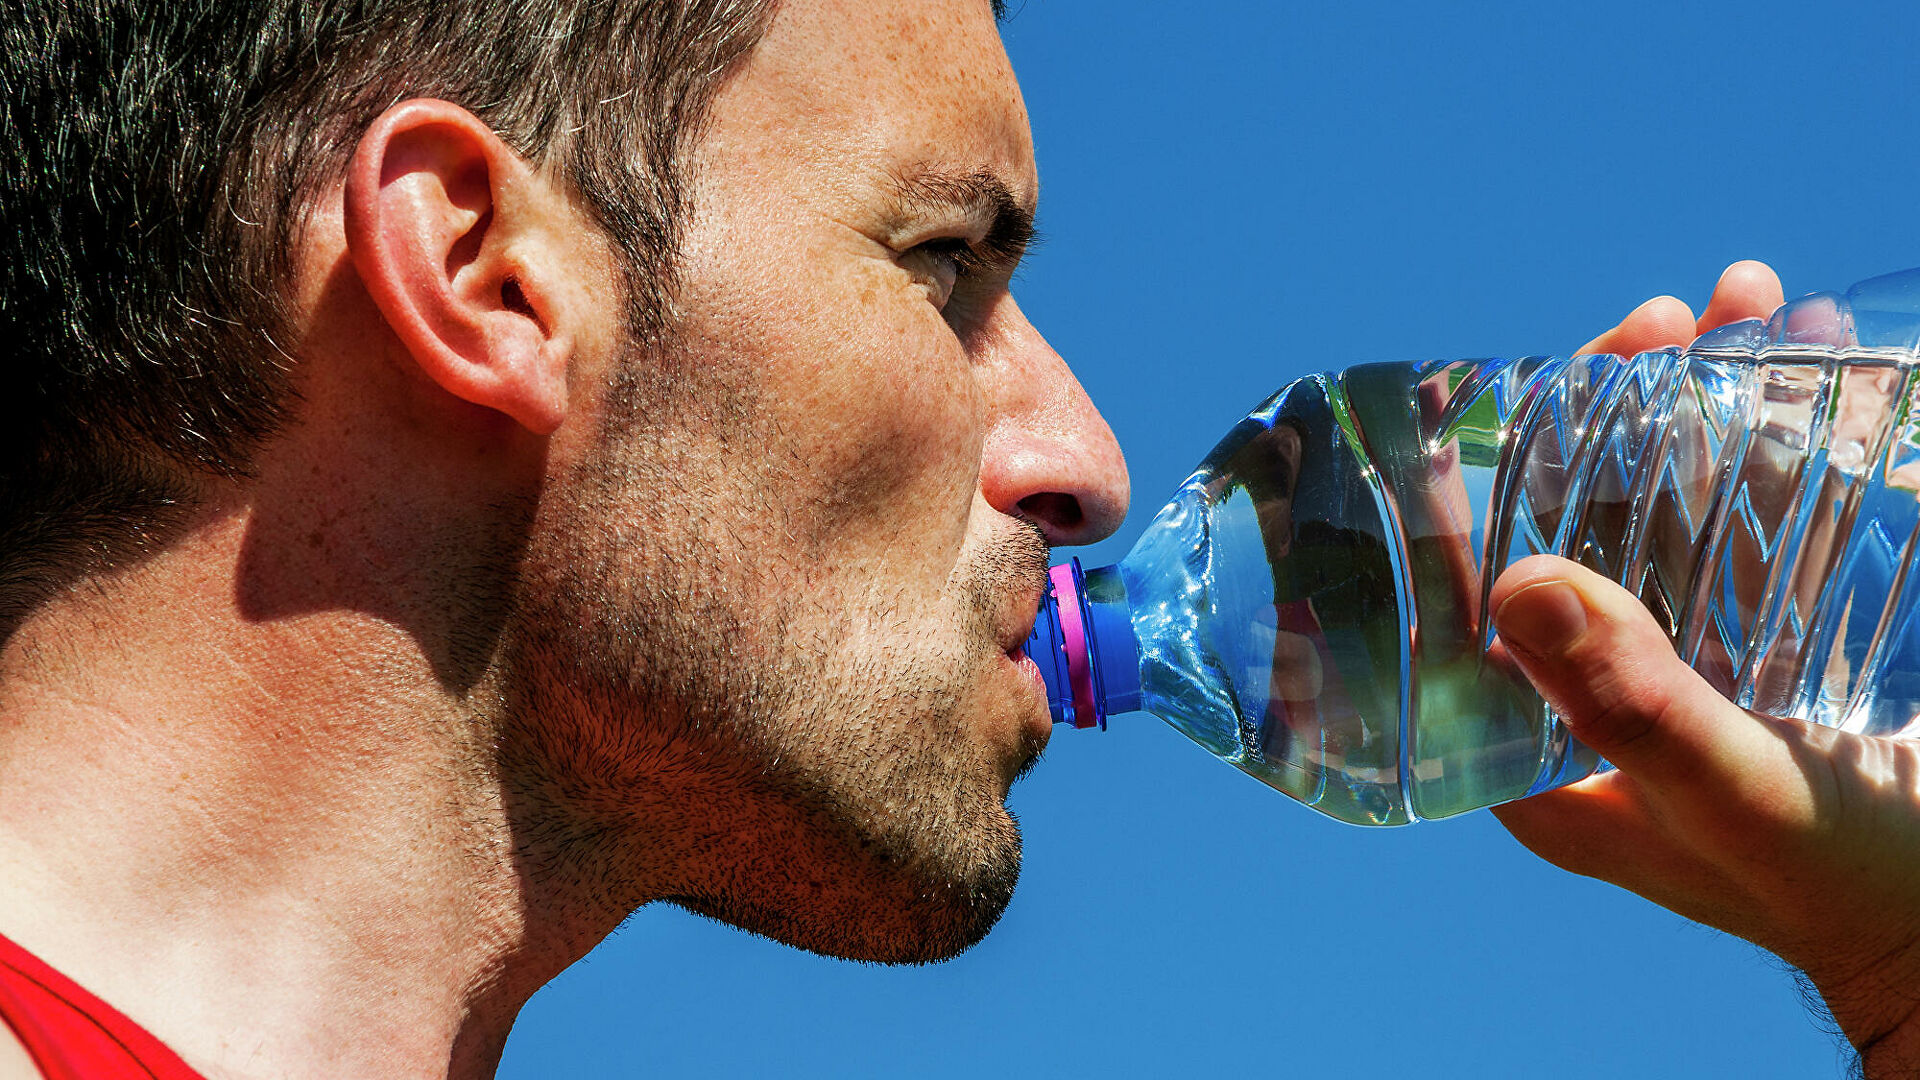  Как выбрать качественную питьевую воду 